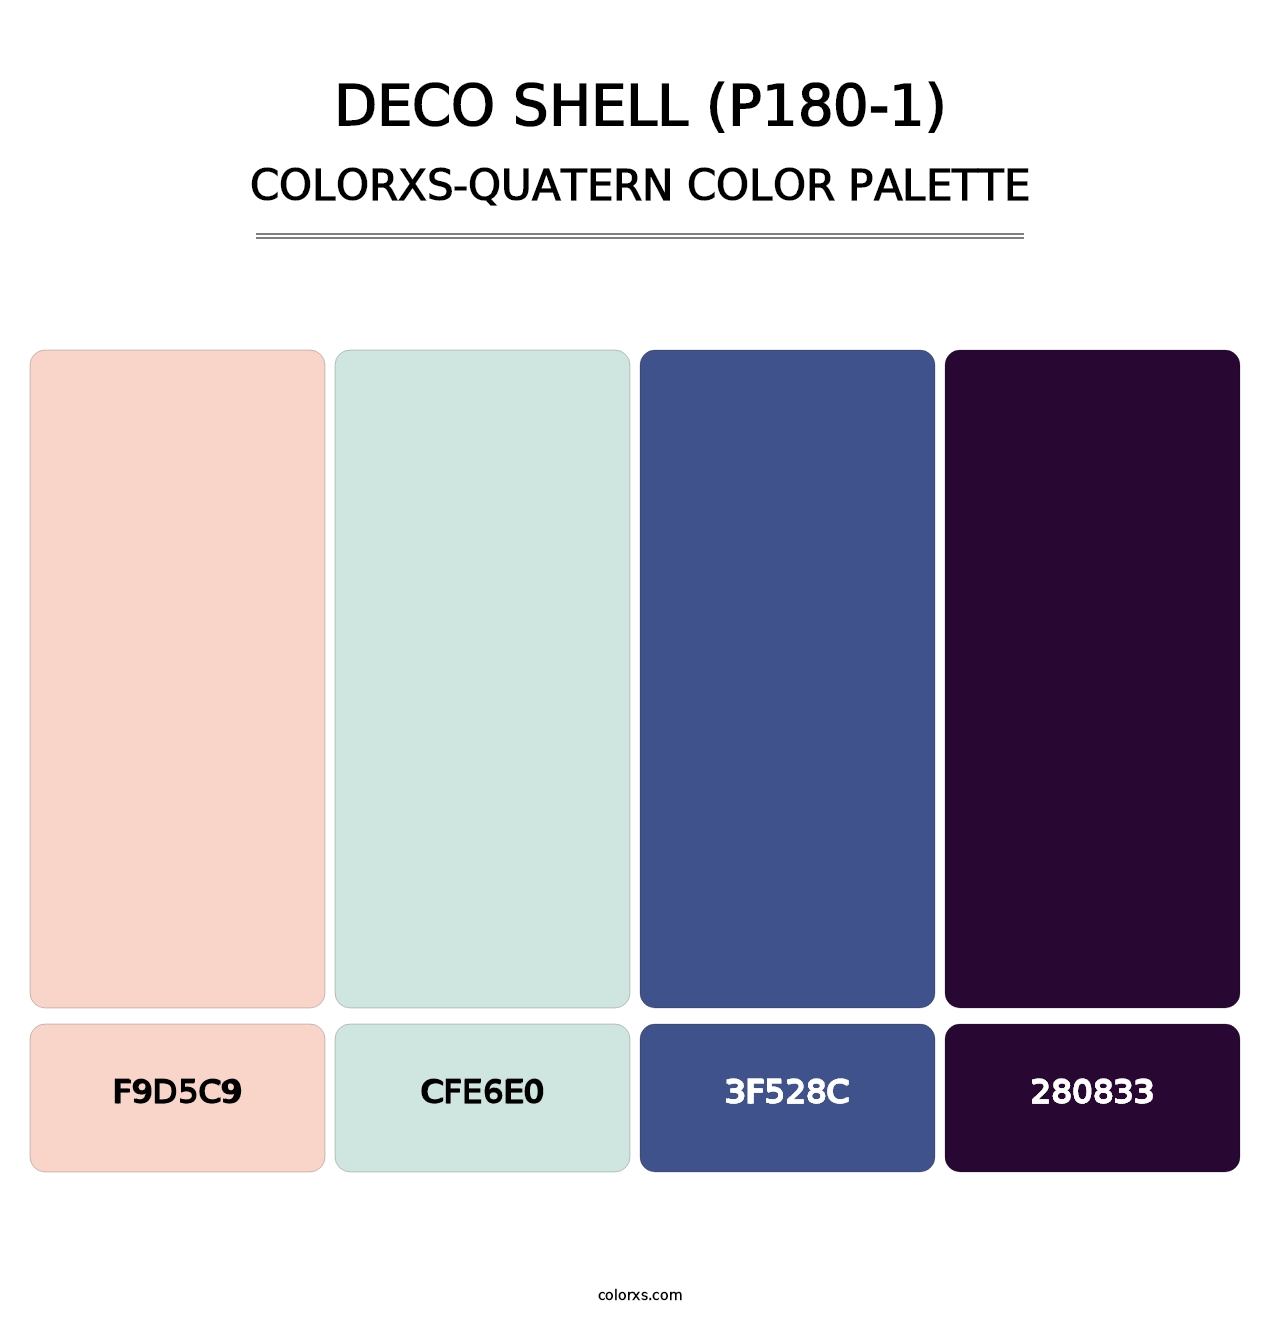 Deco Shell (P180-1) - Colorxs Quatern Palette